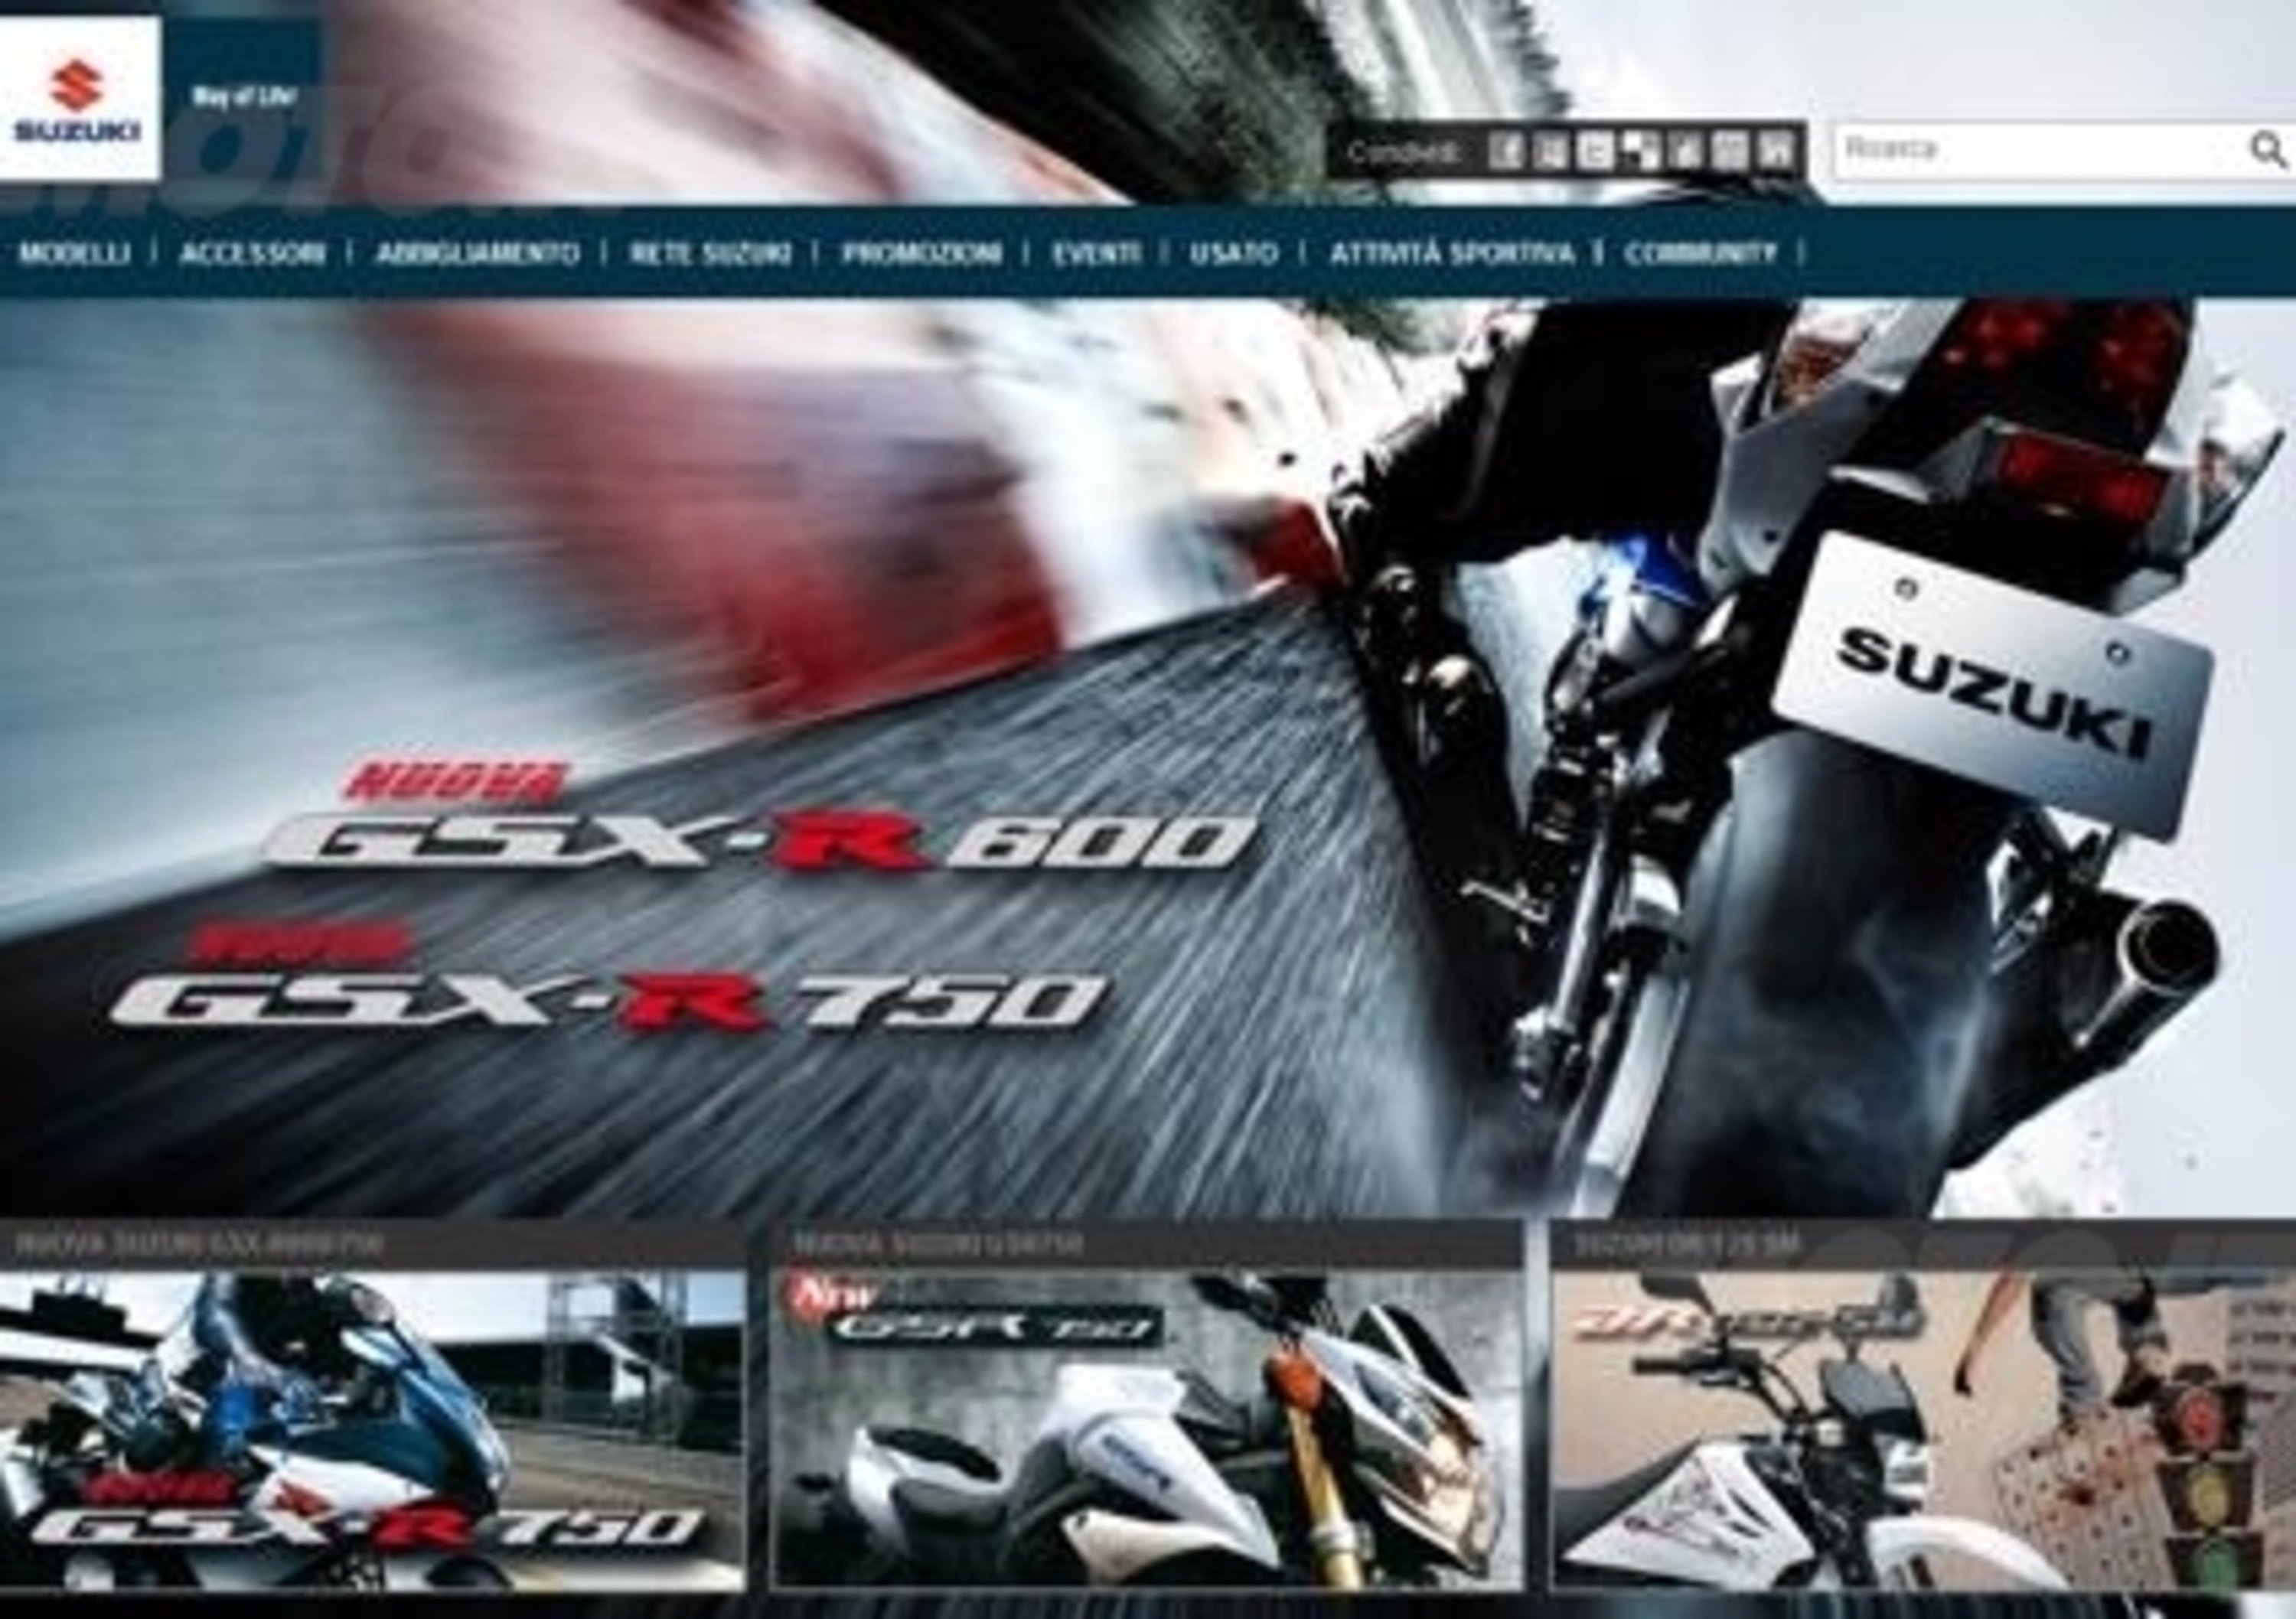 Suzuki rinnova il suo sito web